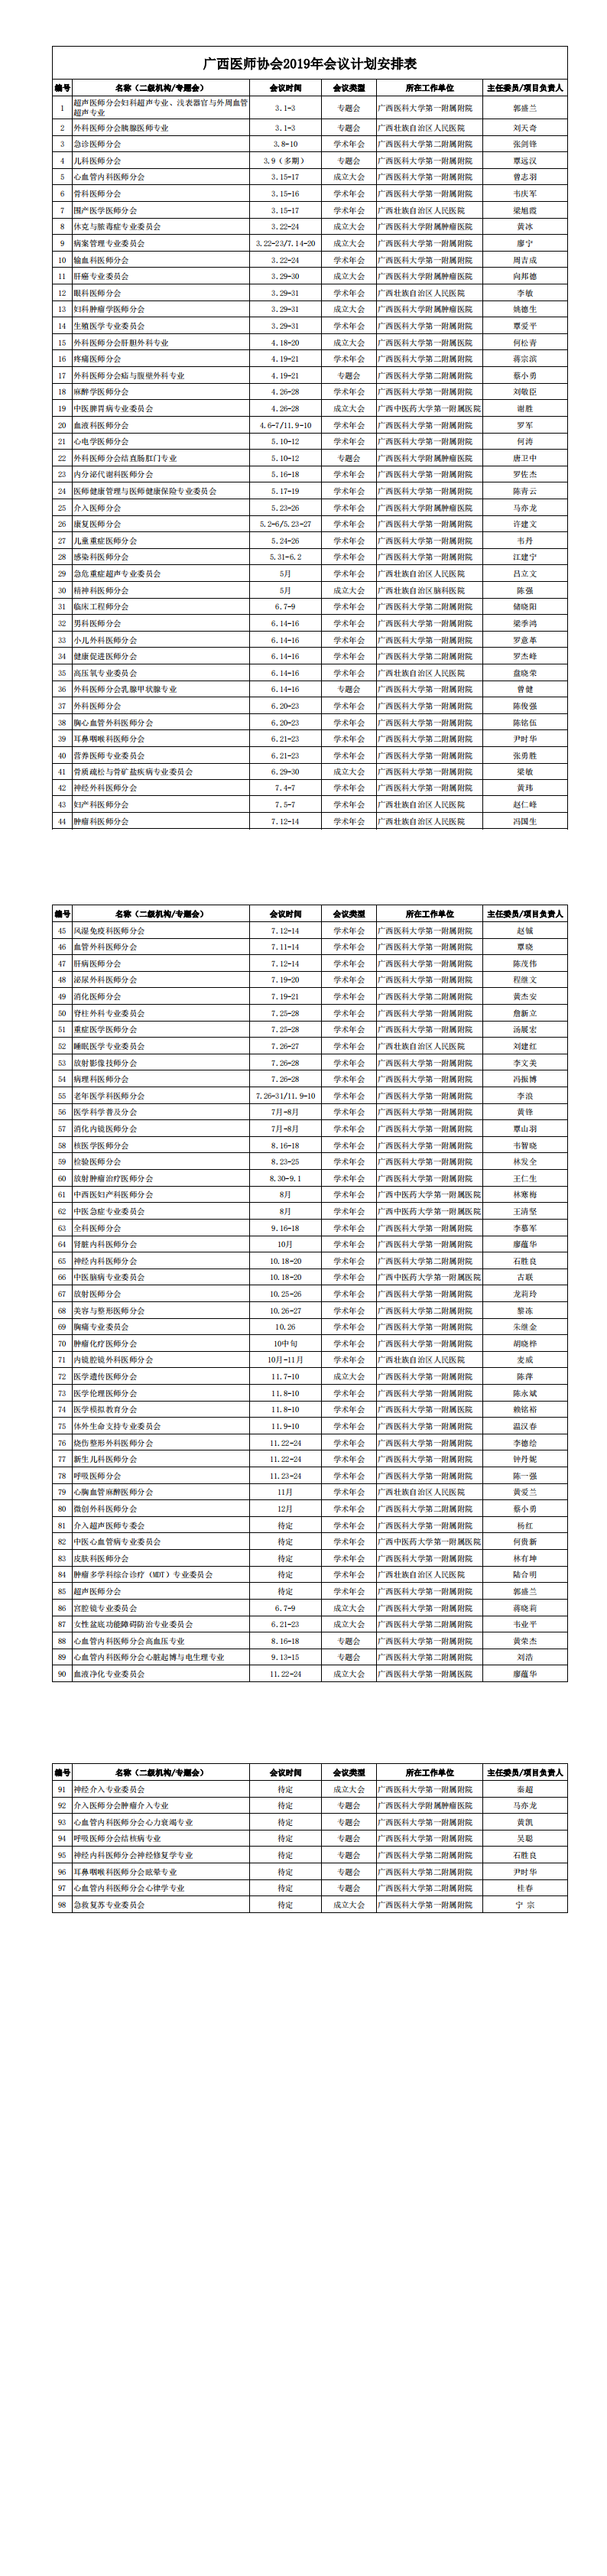 广西医师协会2019年会议计划安排表(1)_00.png